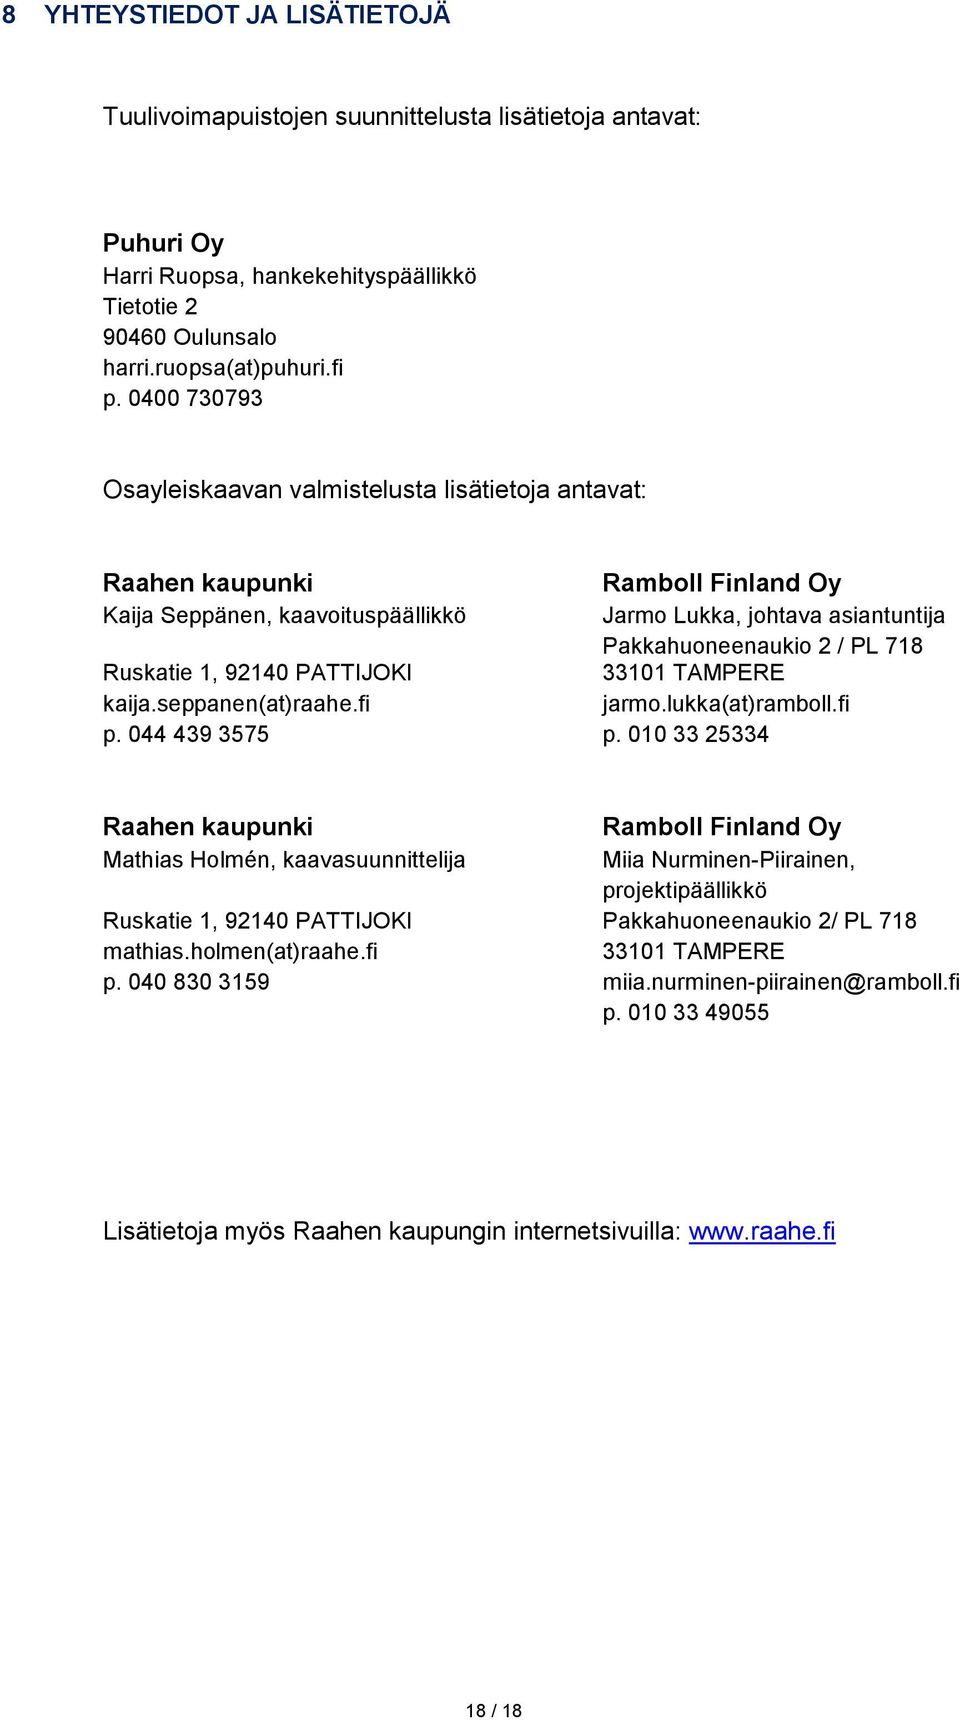 Ruskatie 1, 92140 PATTIJOKI 33101 TAMPERE kaija.seppanen(at)raahe.fi jarmo.lukka(at)ramboll.fi p. 044 439 3575 p.